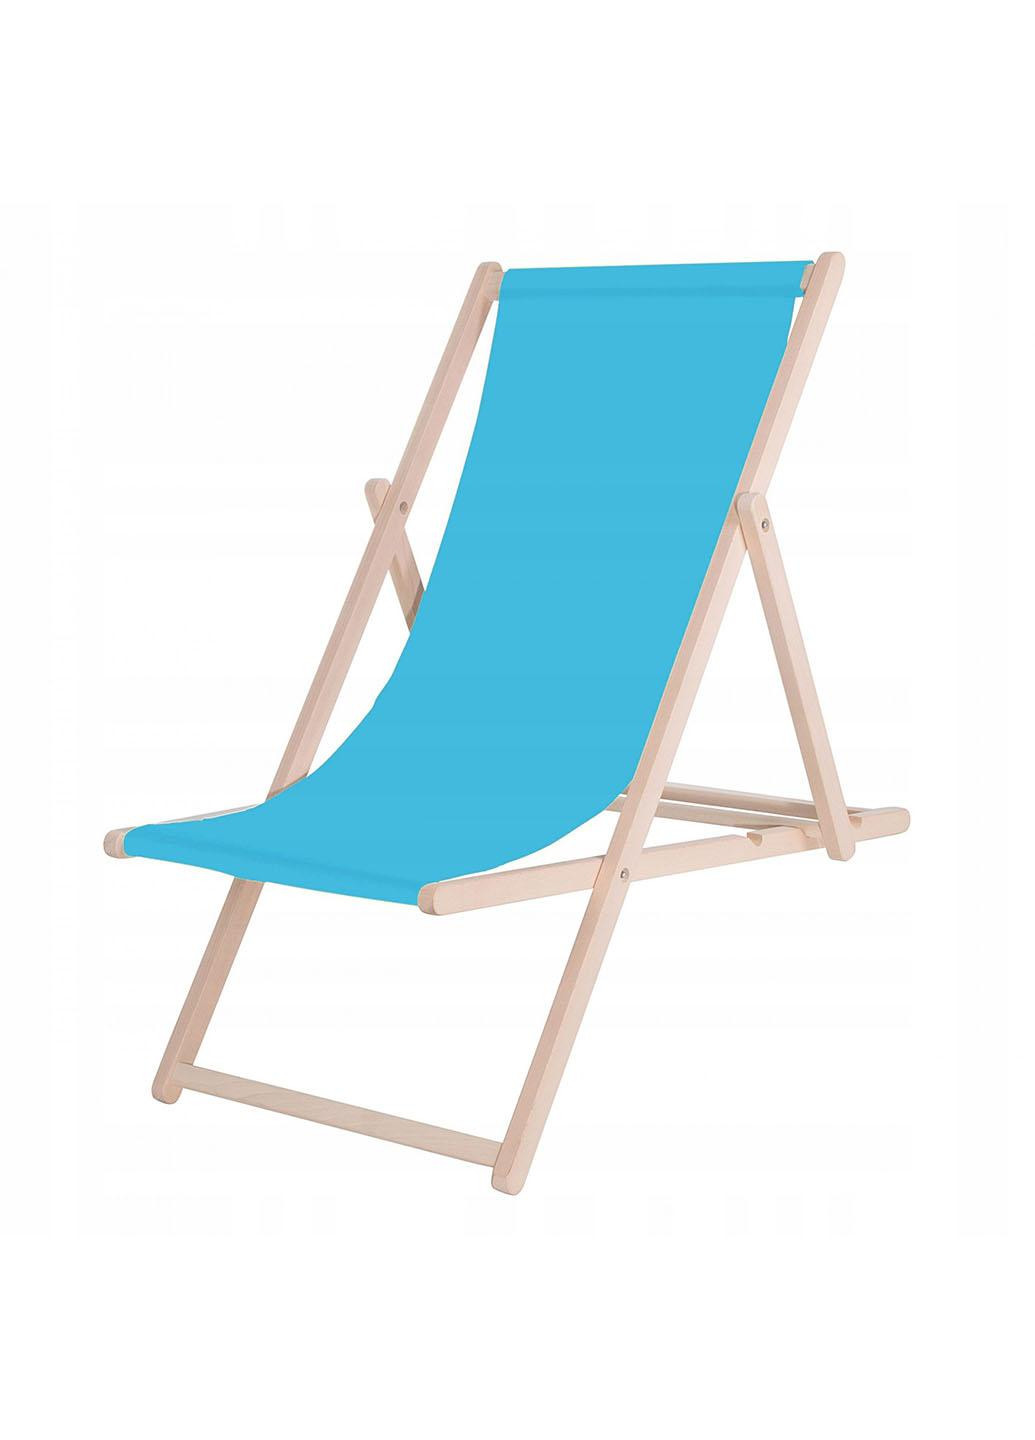 Шезлонг (кресло-лежак) деревянный для пляжа, террасы и сада DC0001 BLUE Springos (258354778)